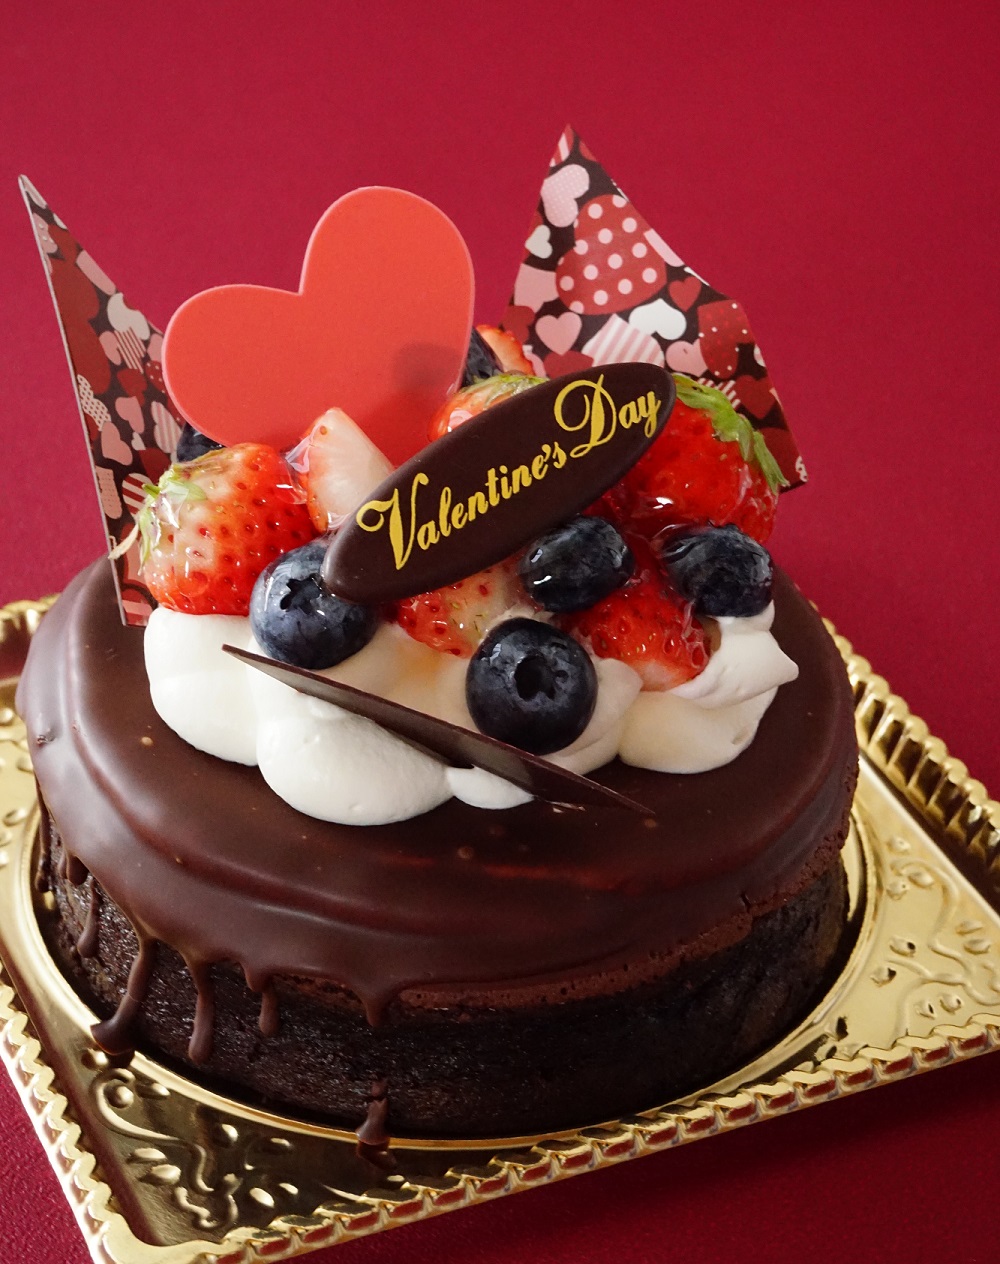 バレンタイン限定の特別なケーキ 野上菓子舗